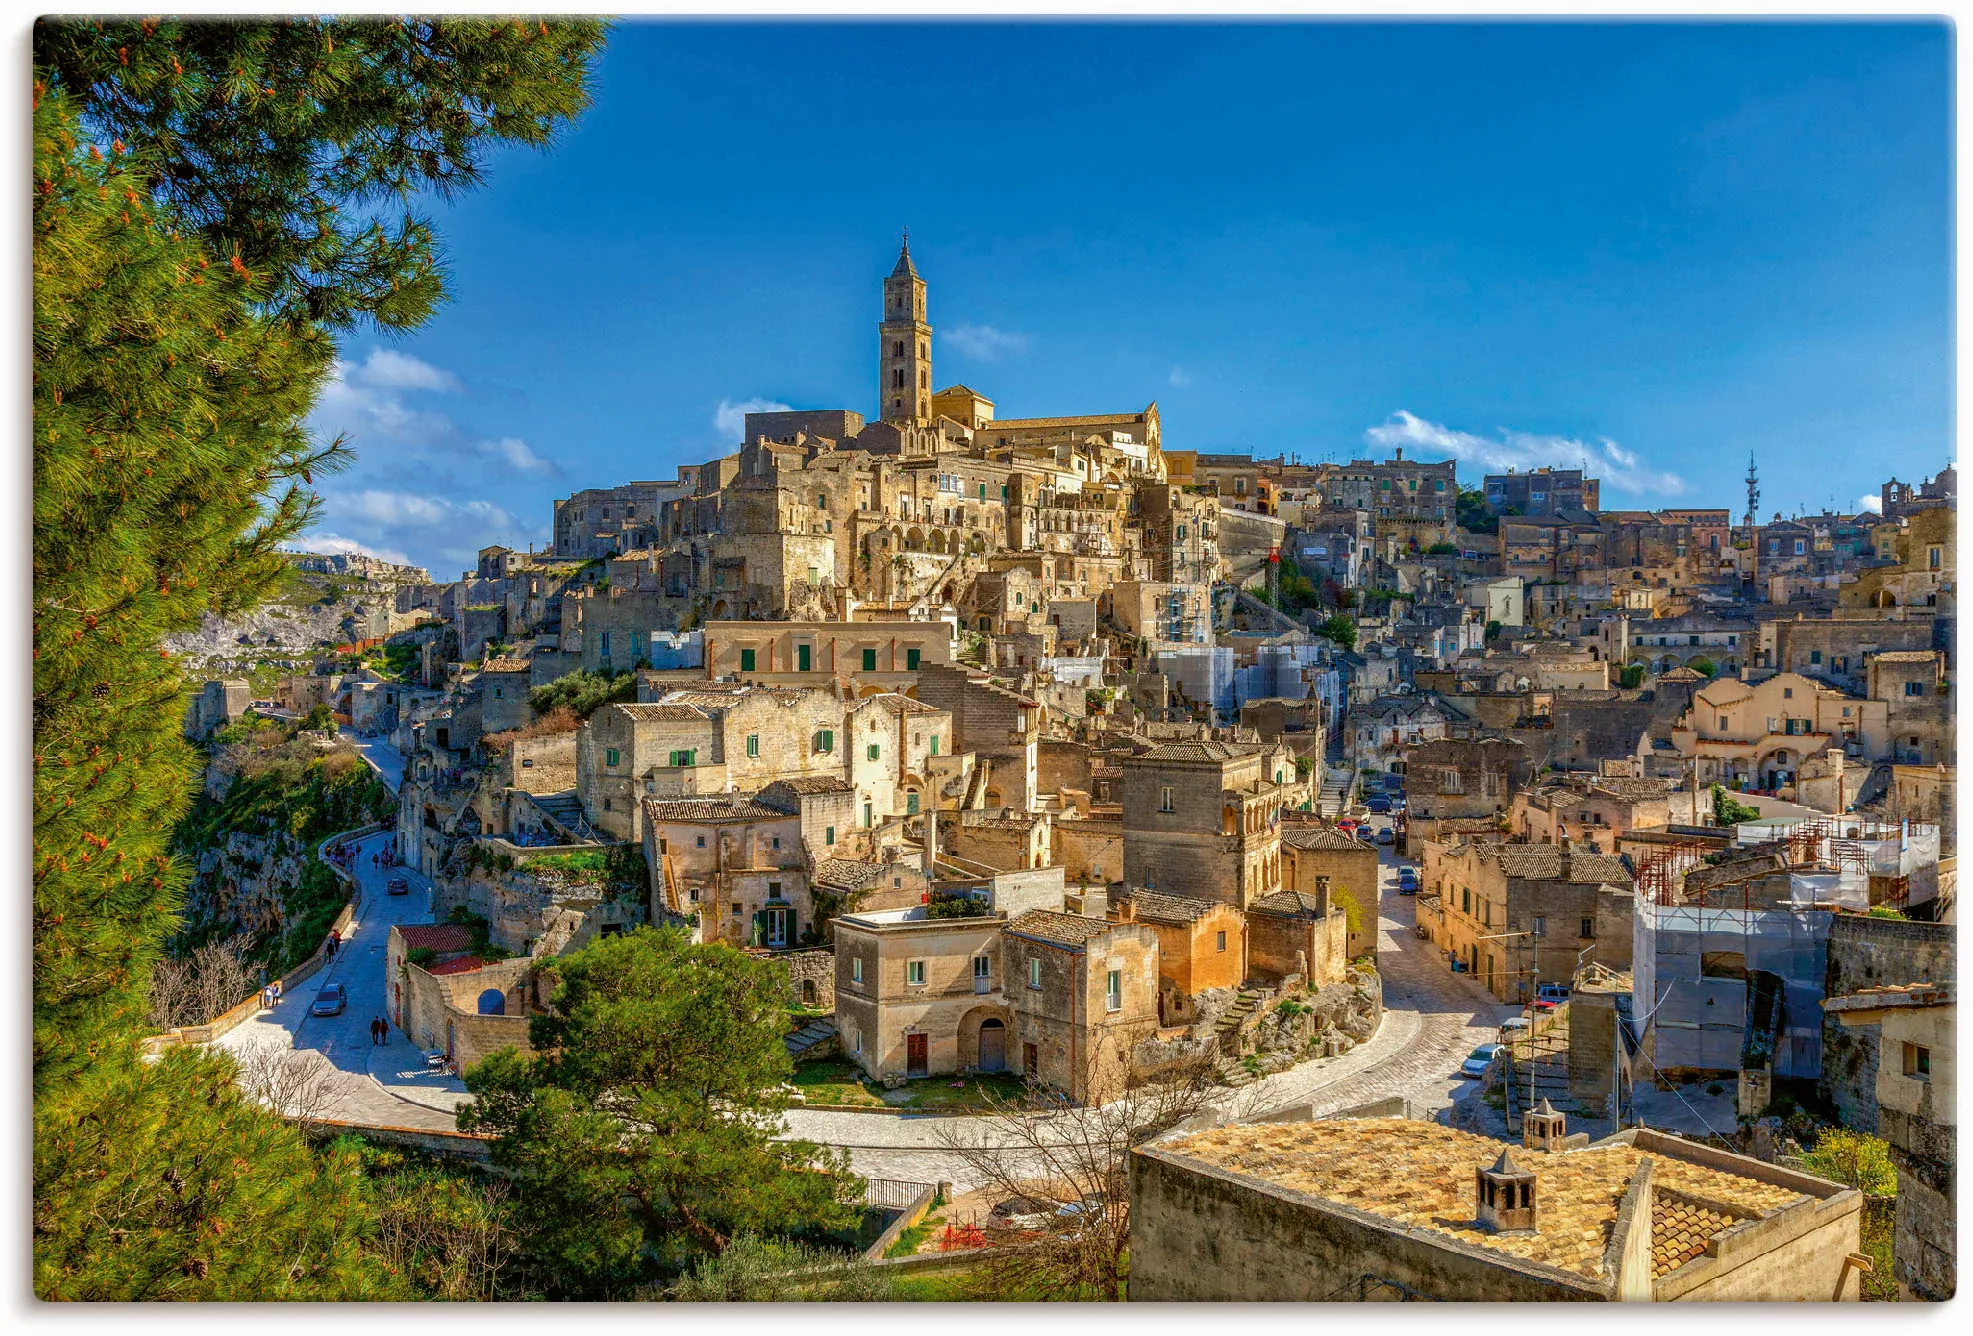 Artland Leinwandbild »Historische Altstadt von Matera Italien«, Italien, (1 günstig online kaufen